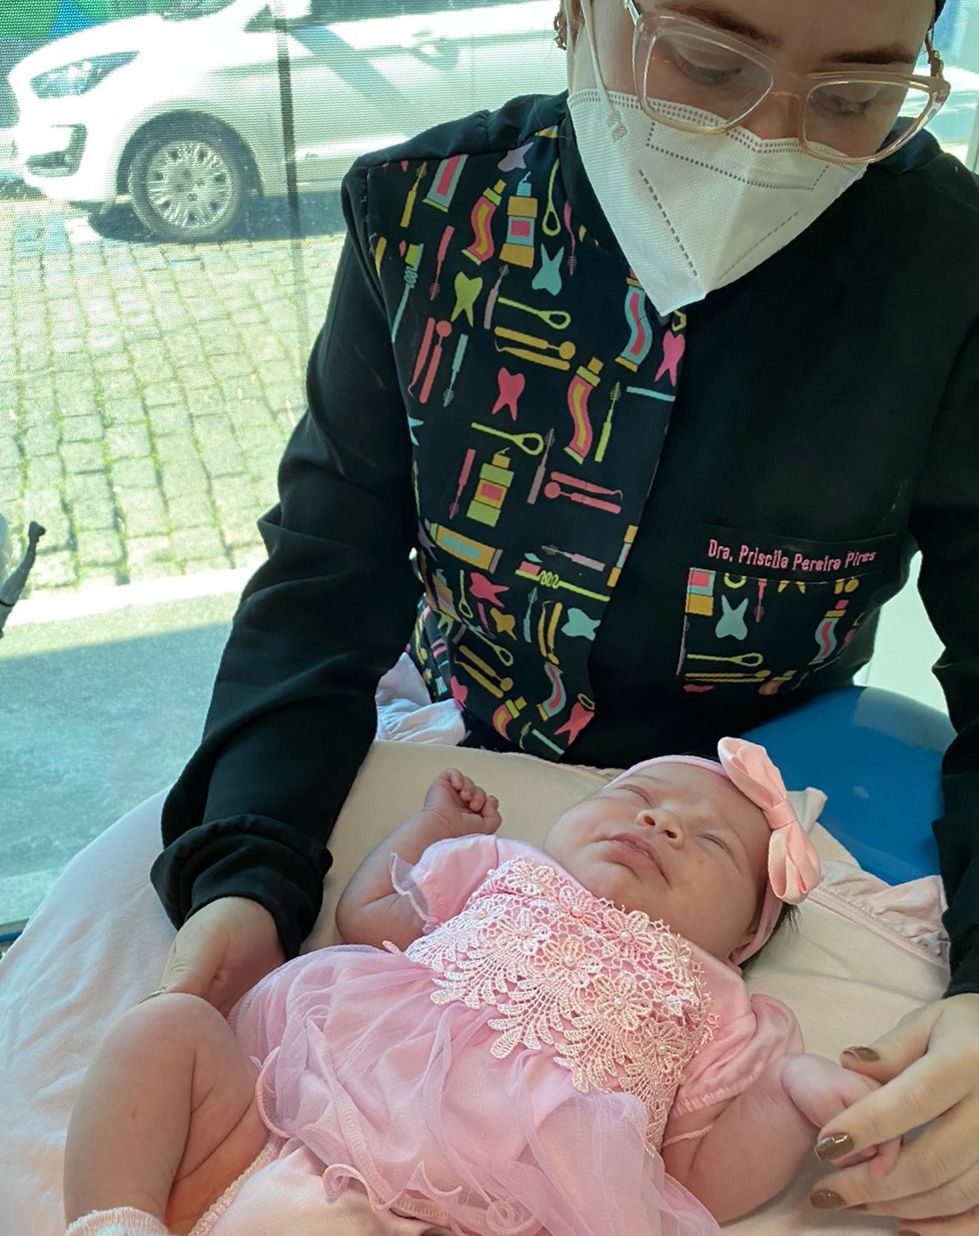 Centro de Especialidades Odontológicas de Mangaratiba  realiza procedimento inédito em recém nascido